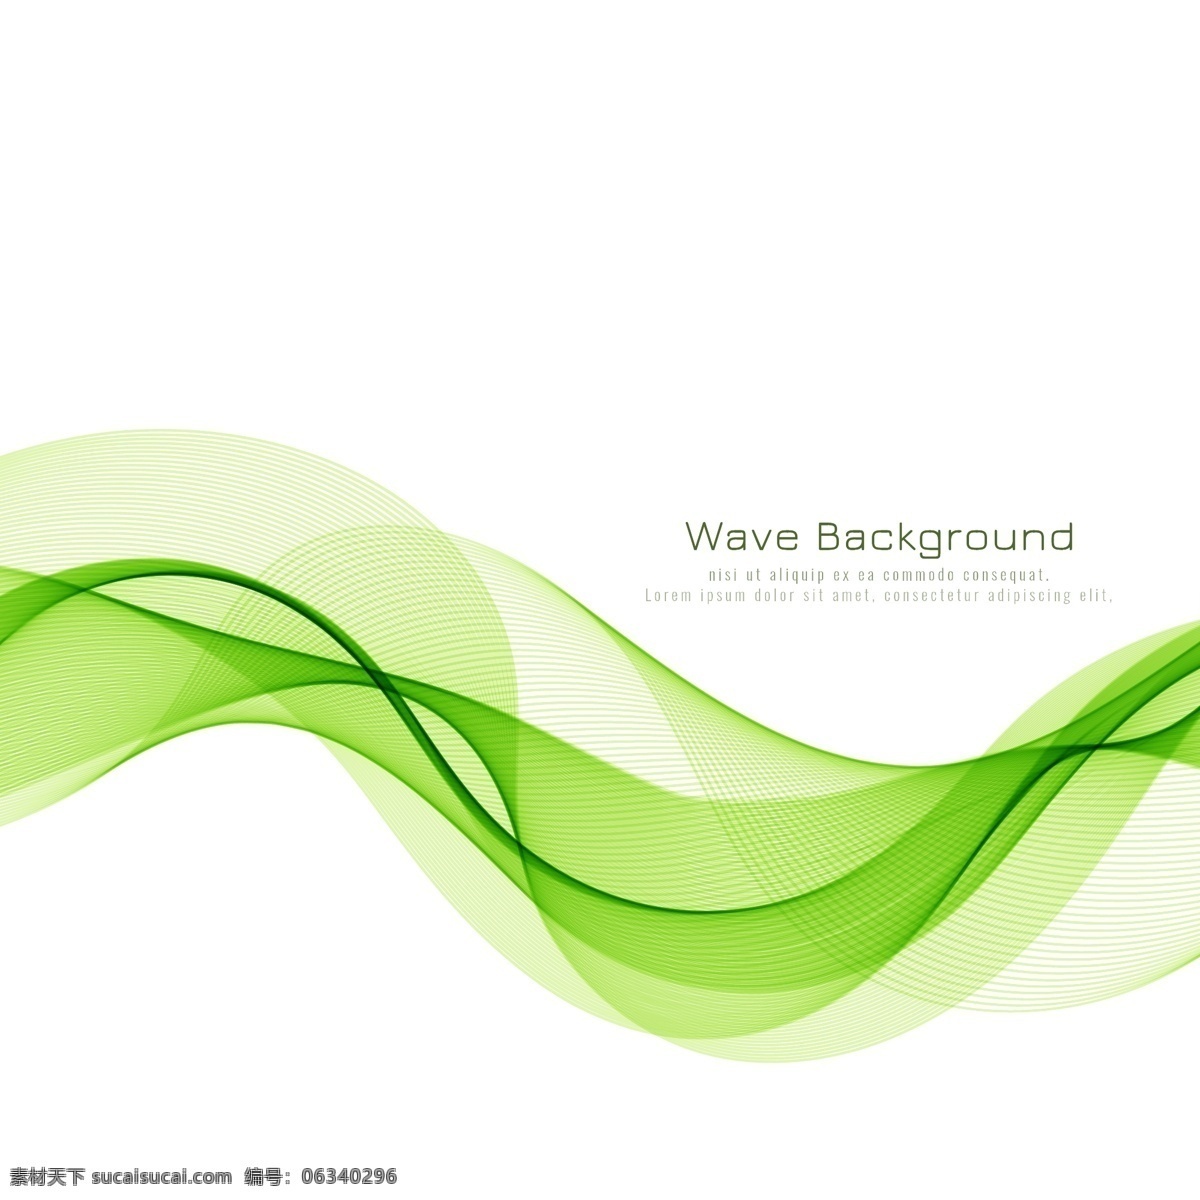 绿色 抽象 波纹 背景 封面设计 封面 抽象背景 抽象曲线 曲线 设计素材 背景图片 绿色背景 线条 海报 底纹边框 抽象底纹